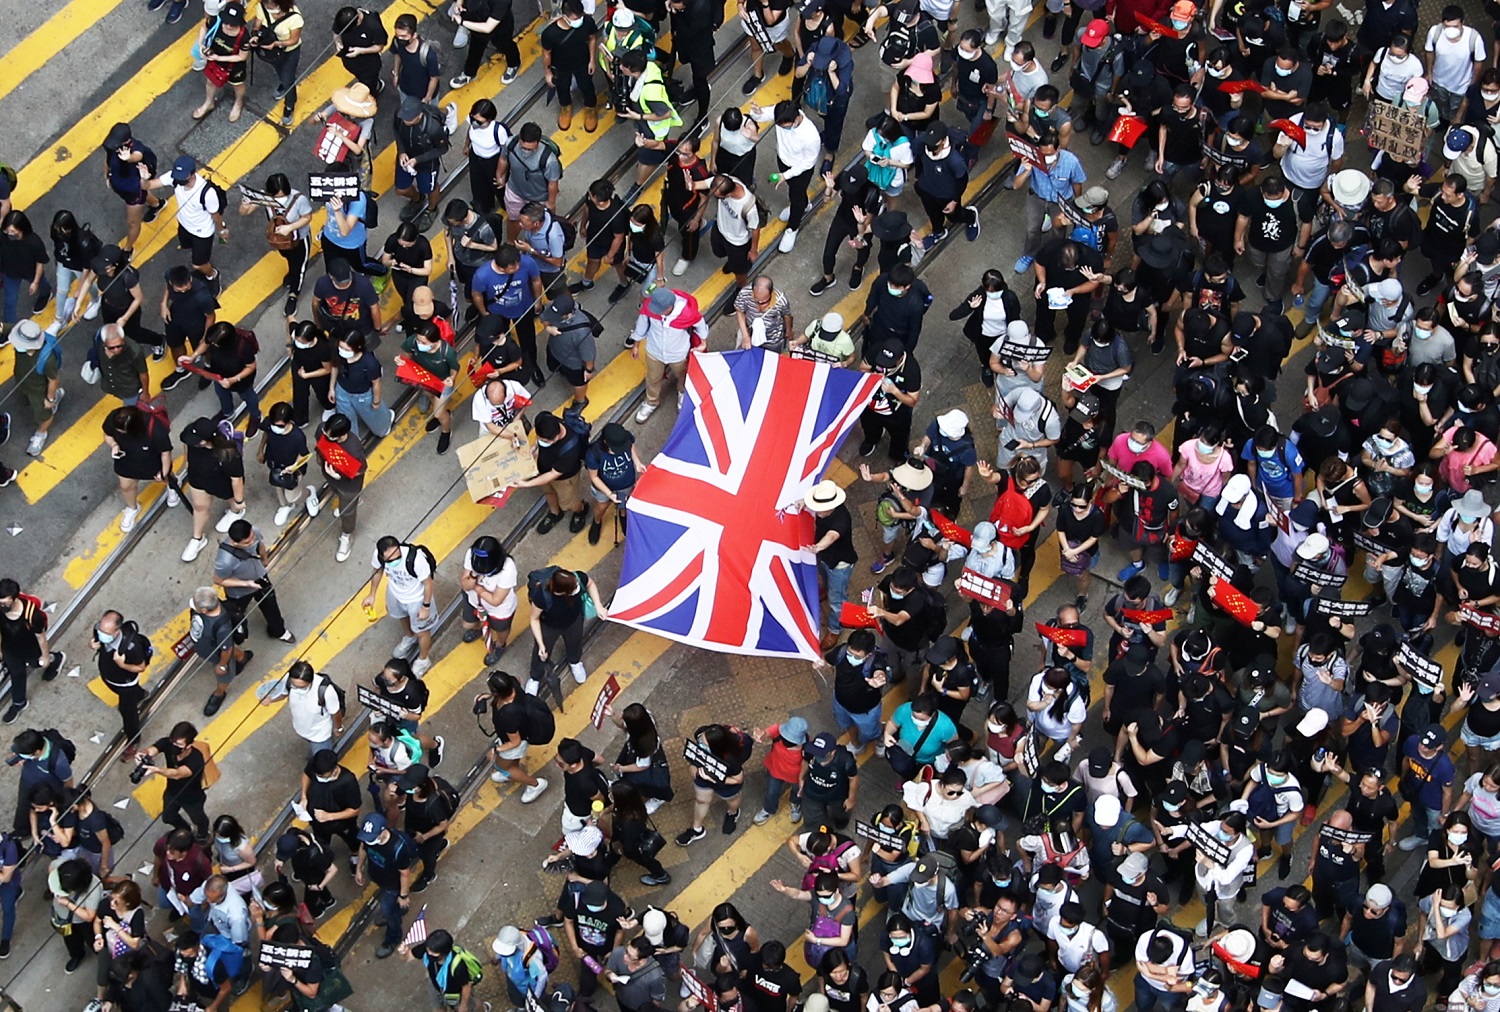 محتجون في هونغ كونغ يحملون العلم البريطاني ويرددون النشيد الوطني البريطاني للضغط على الحكومة الصينية، 15 أيلول/سبتمبر 2019. رويترز 